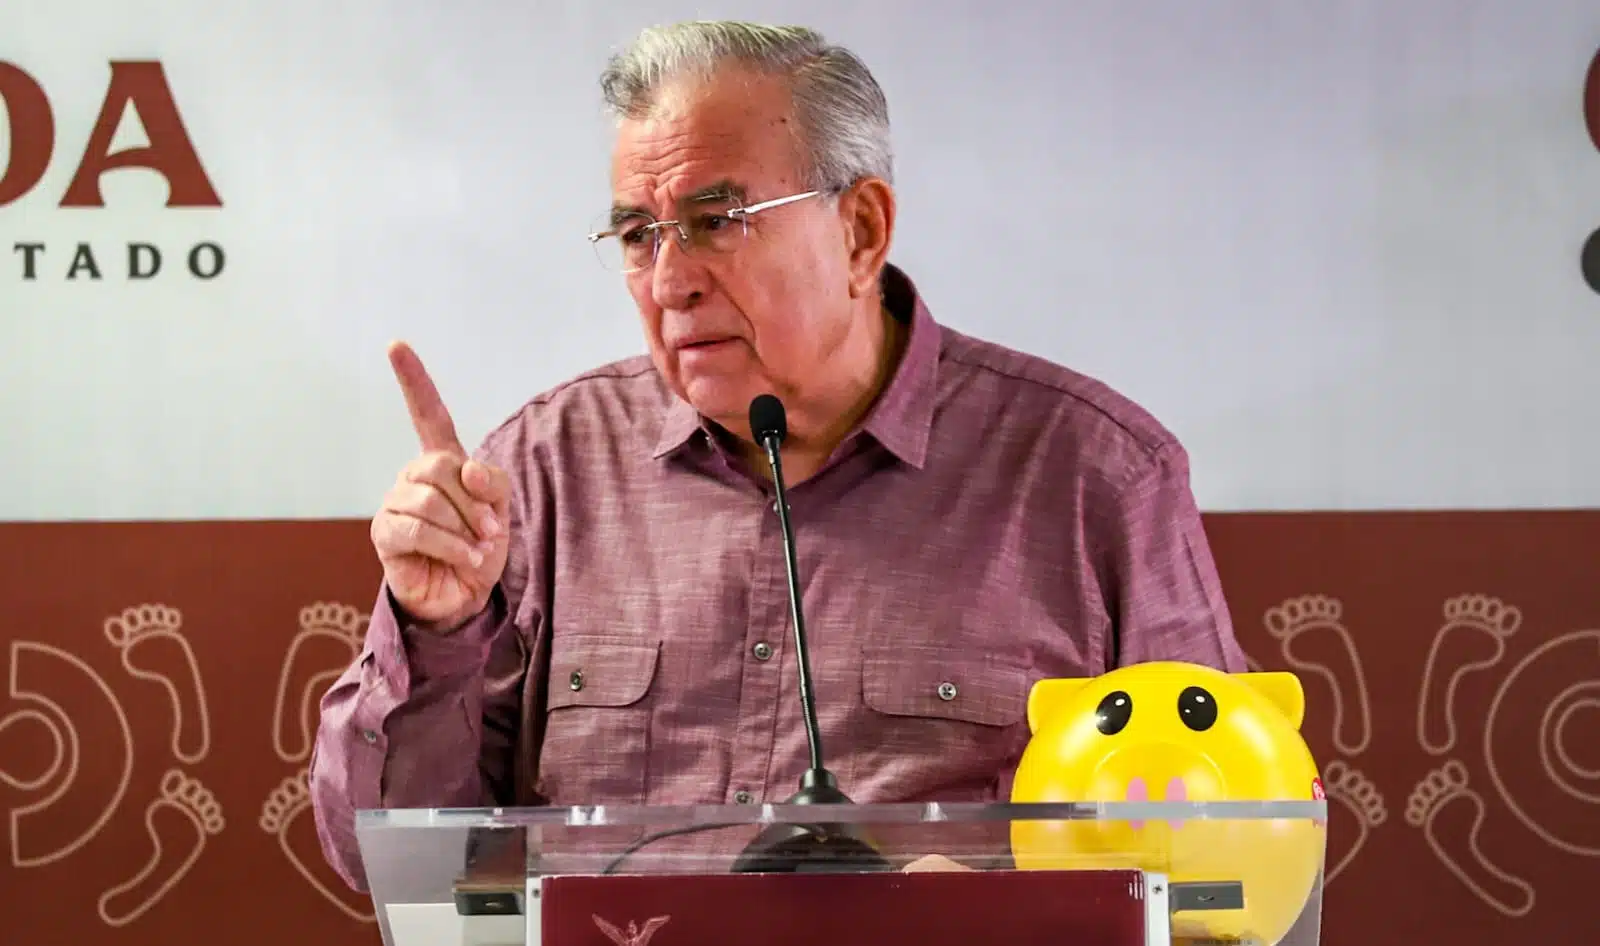 Rubén Rocha Moya en su conferencias emanera